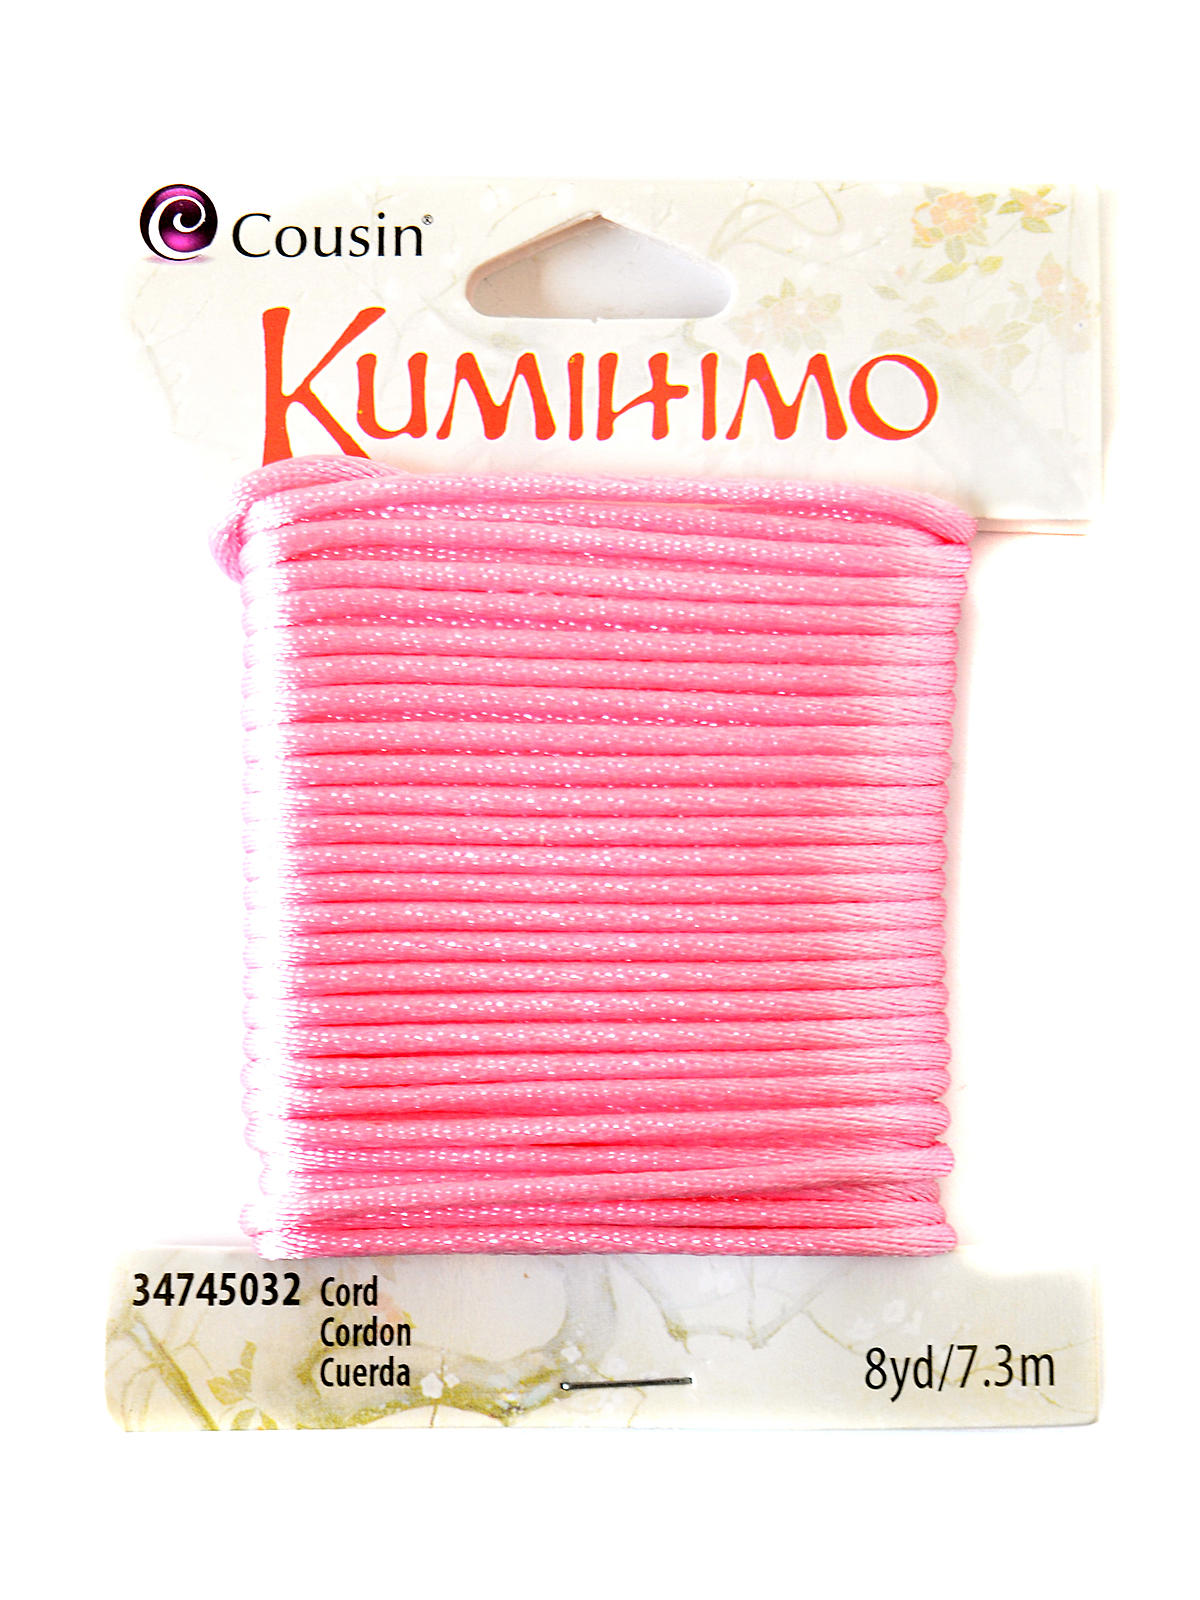 Kumihimo Cord 1.5 Mm X 8 Yds. Pink